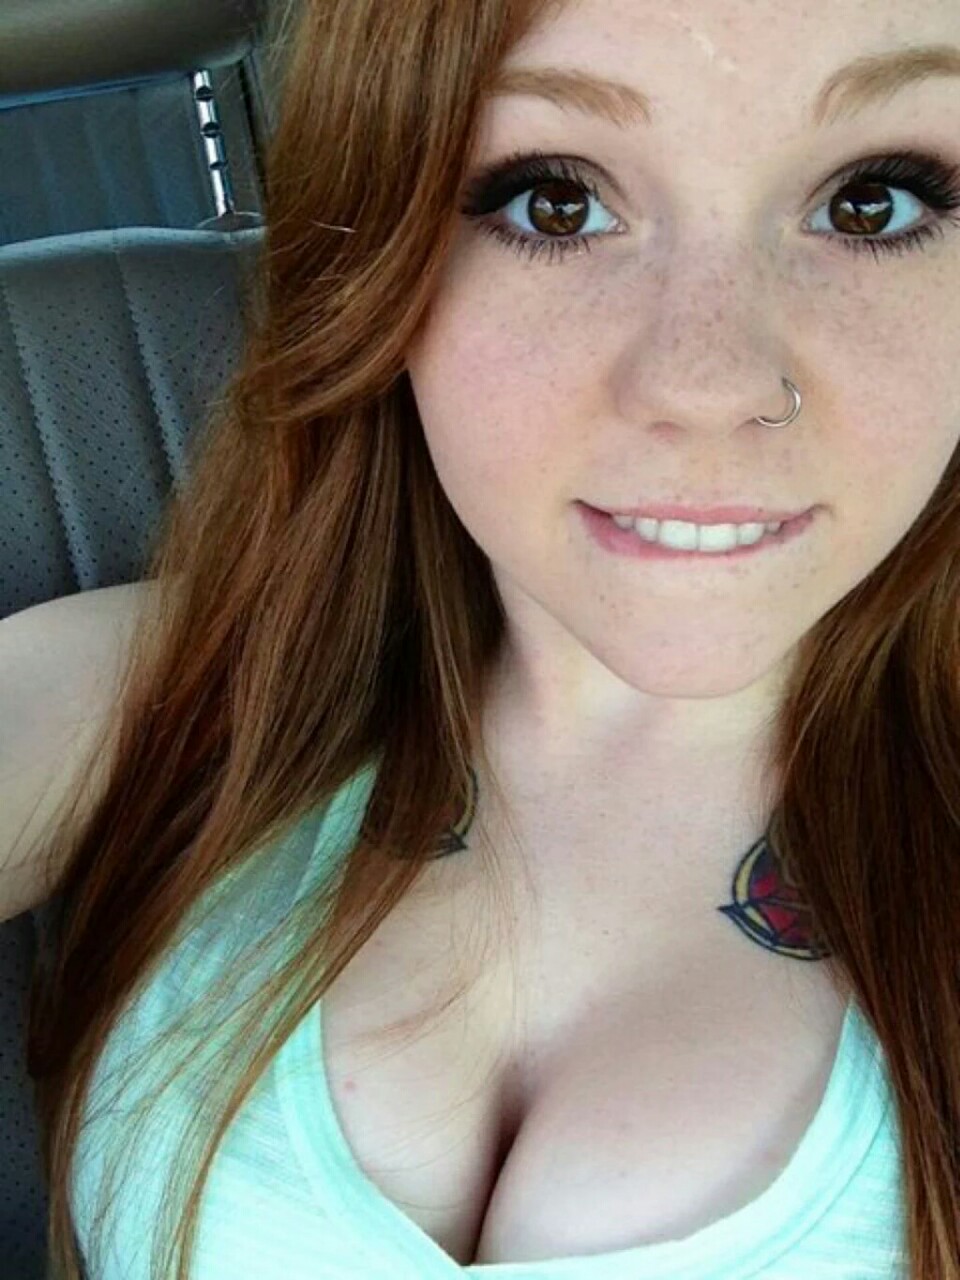 galleries redhead girlfriend nude selfie